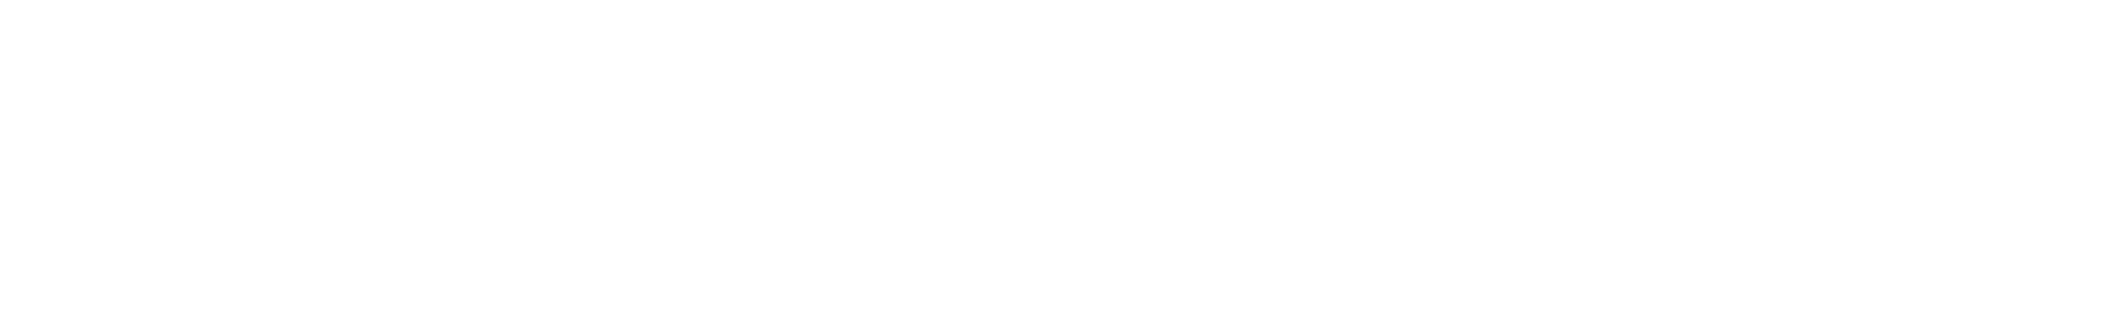 Pôle universitaire de Saint-Nazaire